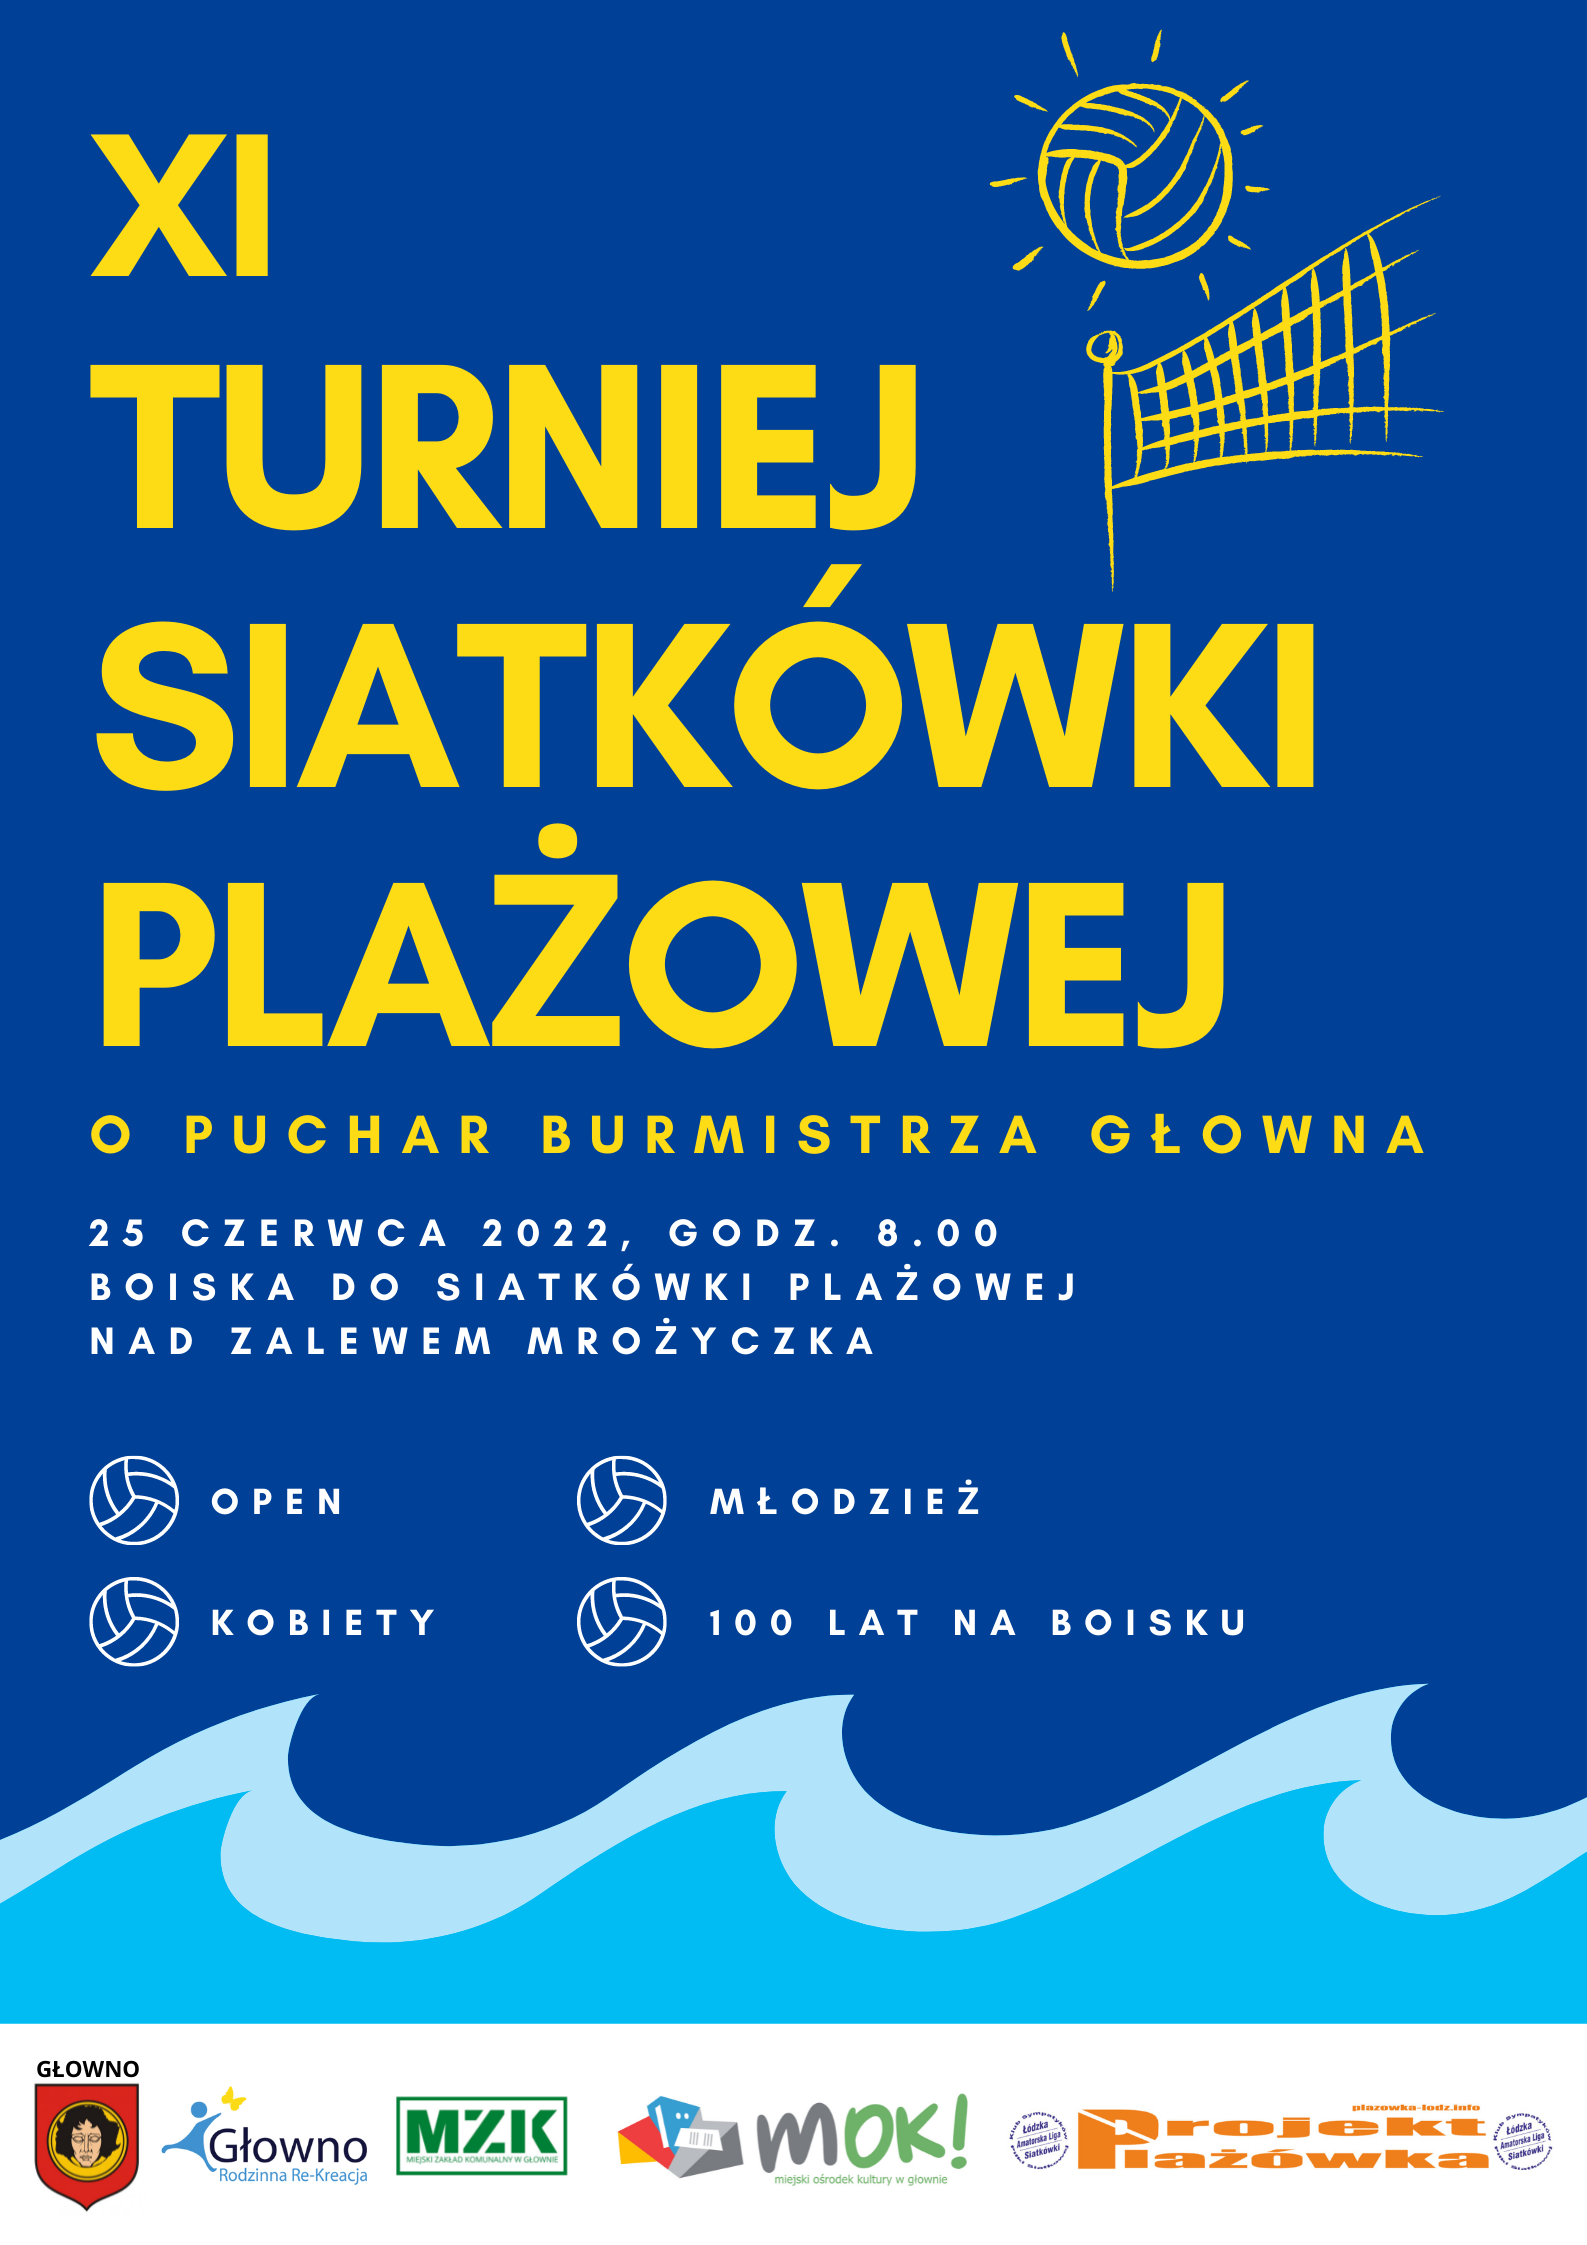 XI Turniej Siatkówki Plażowej o Puchar Burmistrza Głowna - Projekt Plażówka